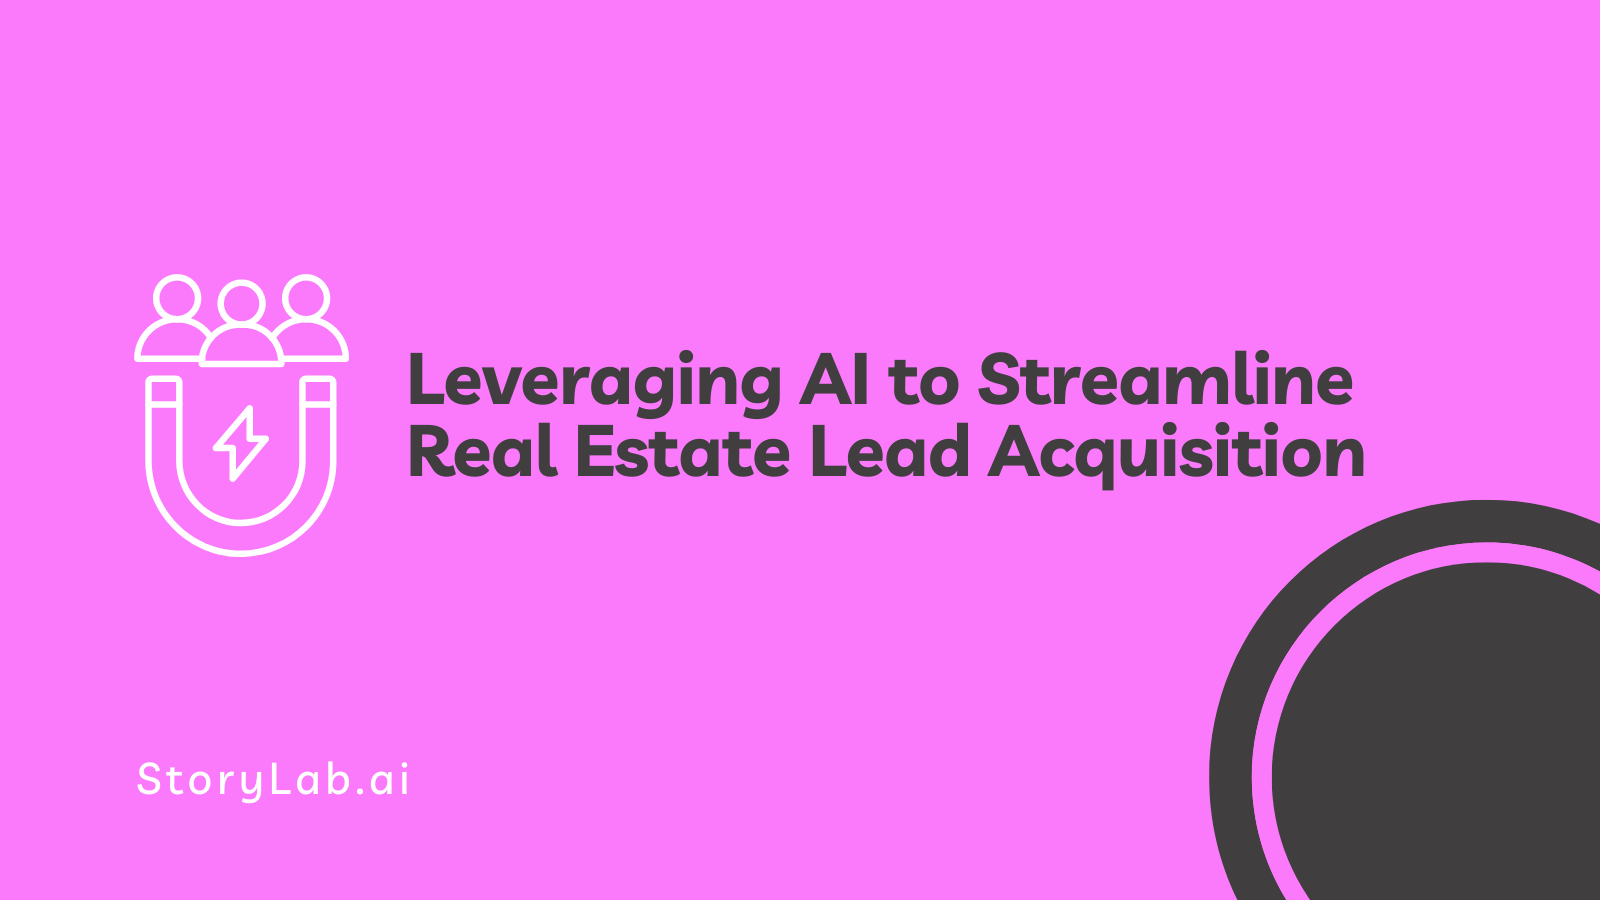 Sfruttare l'intelligenza artificiale per semplificare l'acquisizione di lead immobiliari